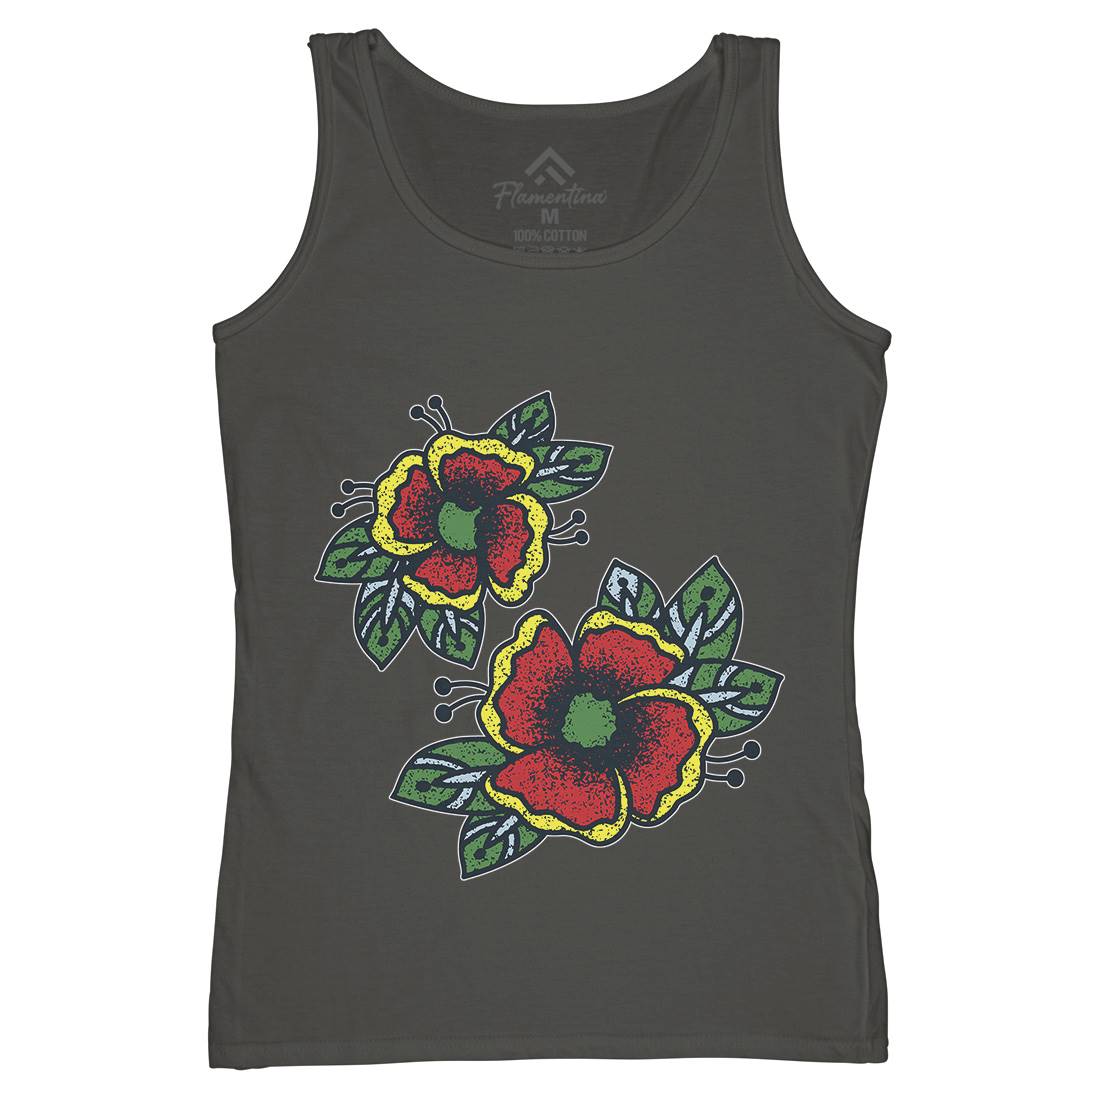 Flowers Womens Organic Tank Top Vest Tattoo A968